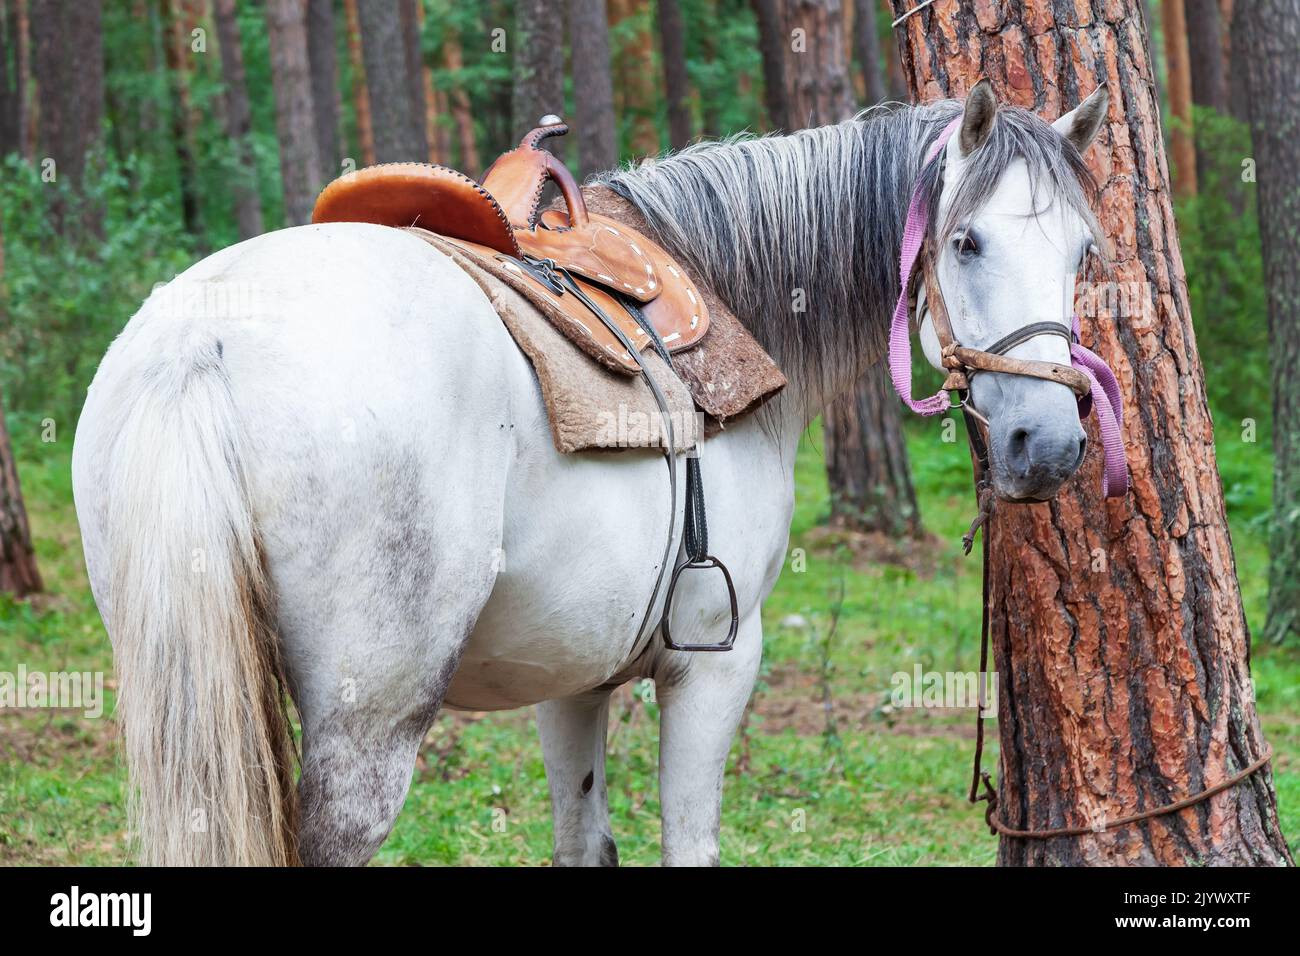 Un cheval blanc se retourne et regarde dans le cadre, attaché à un arbre dans la forêt. Banque D'Images